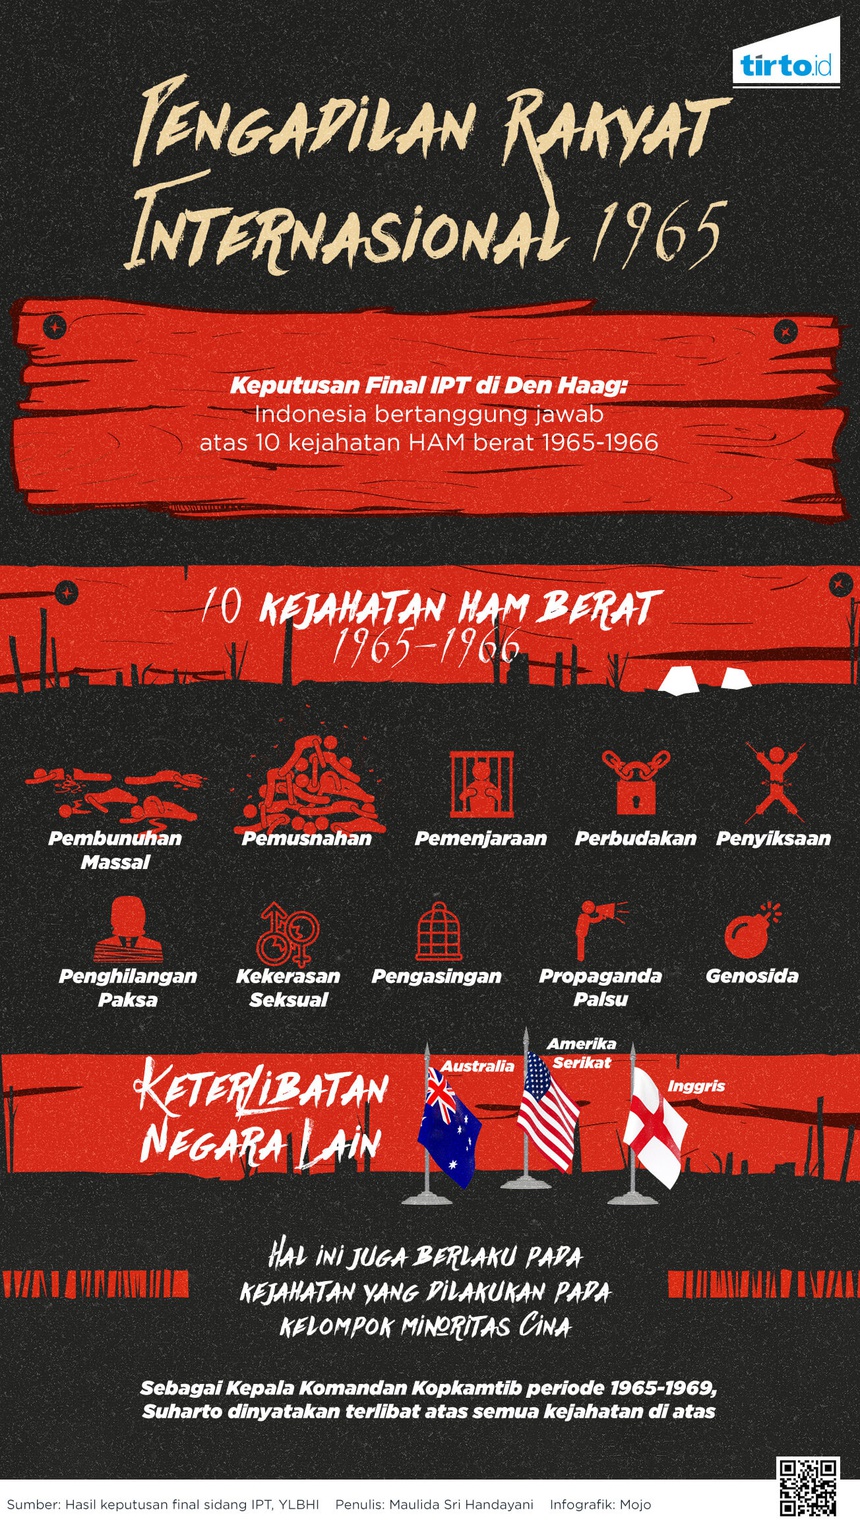 AS, Inggris, dan Australia Bantu Indonesia Melanggar HAM